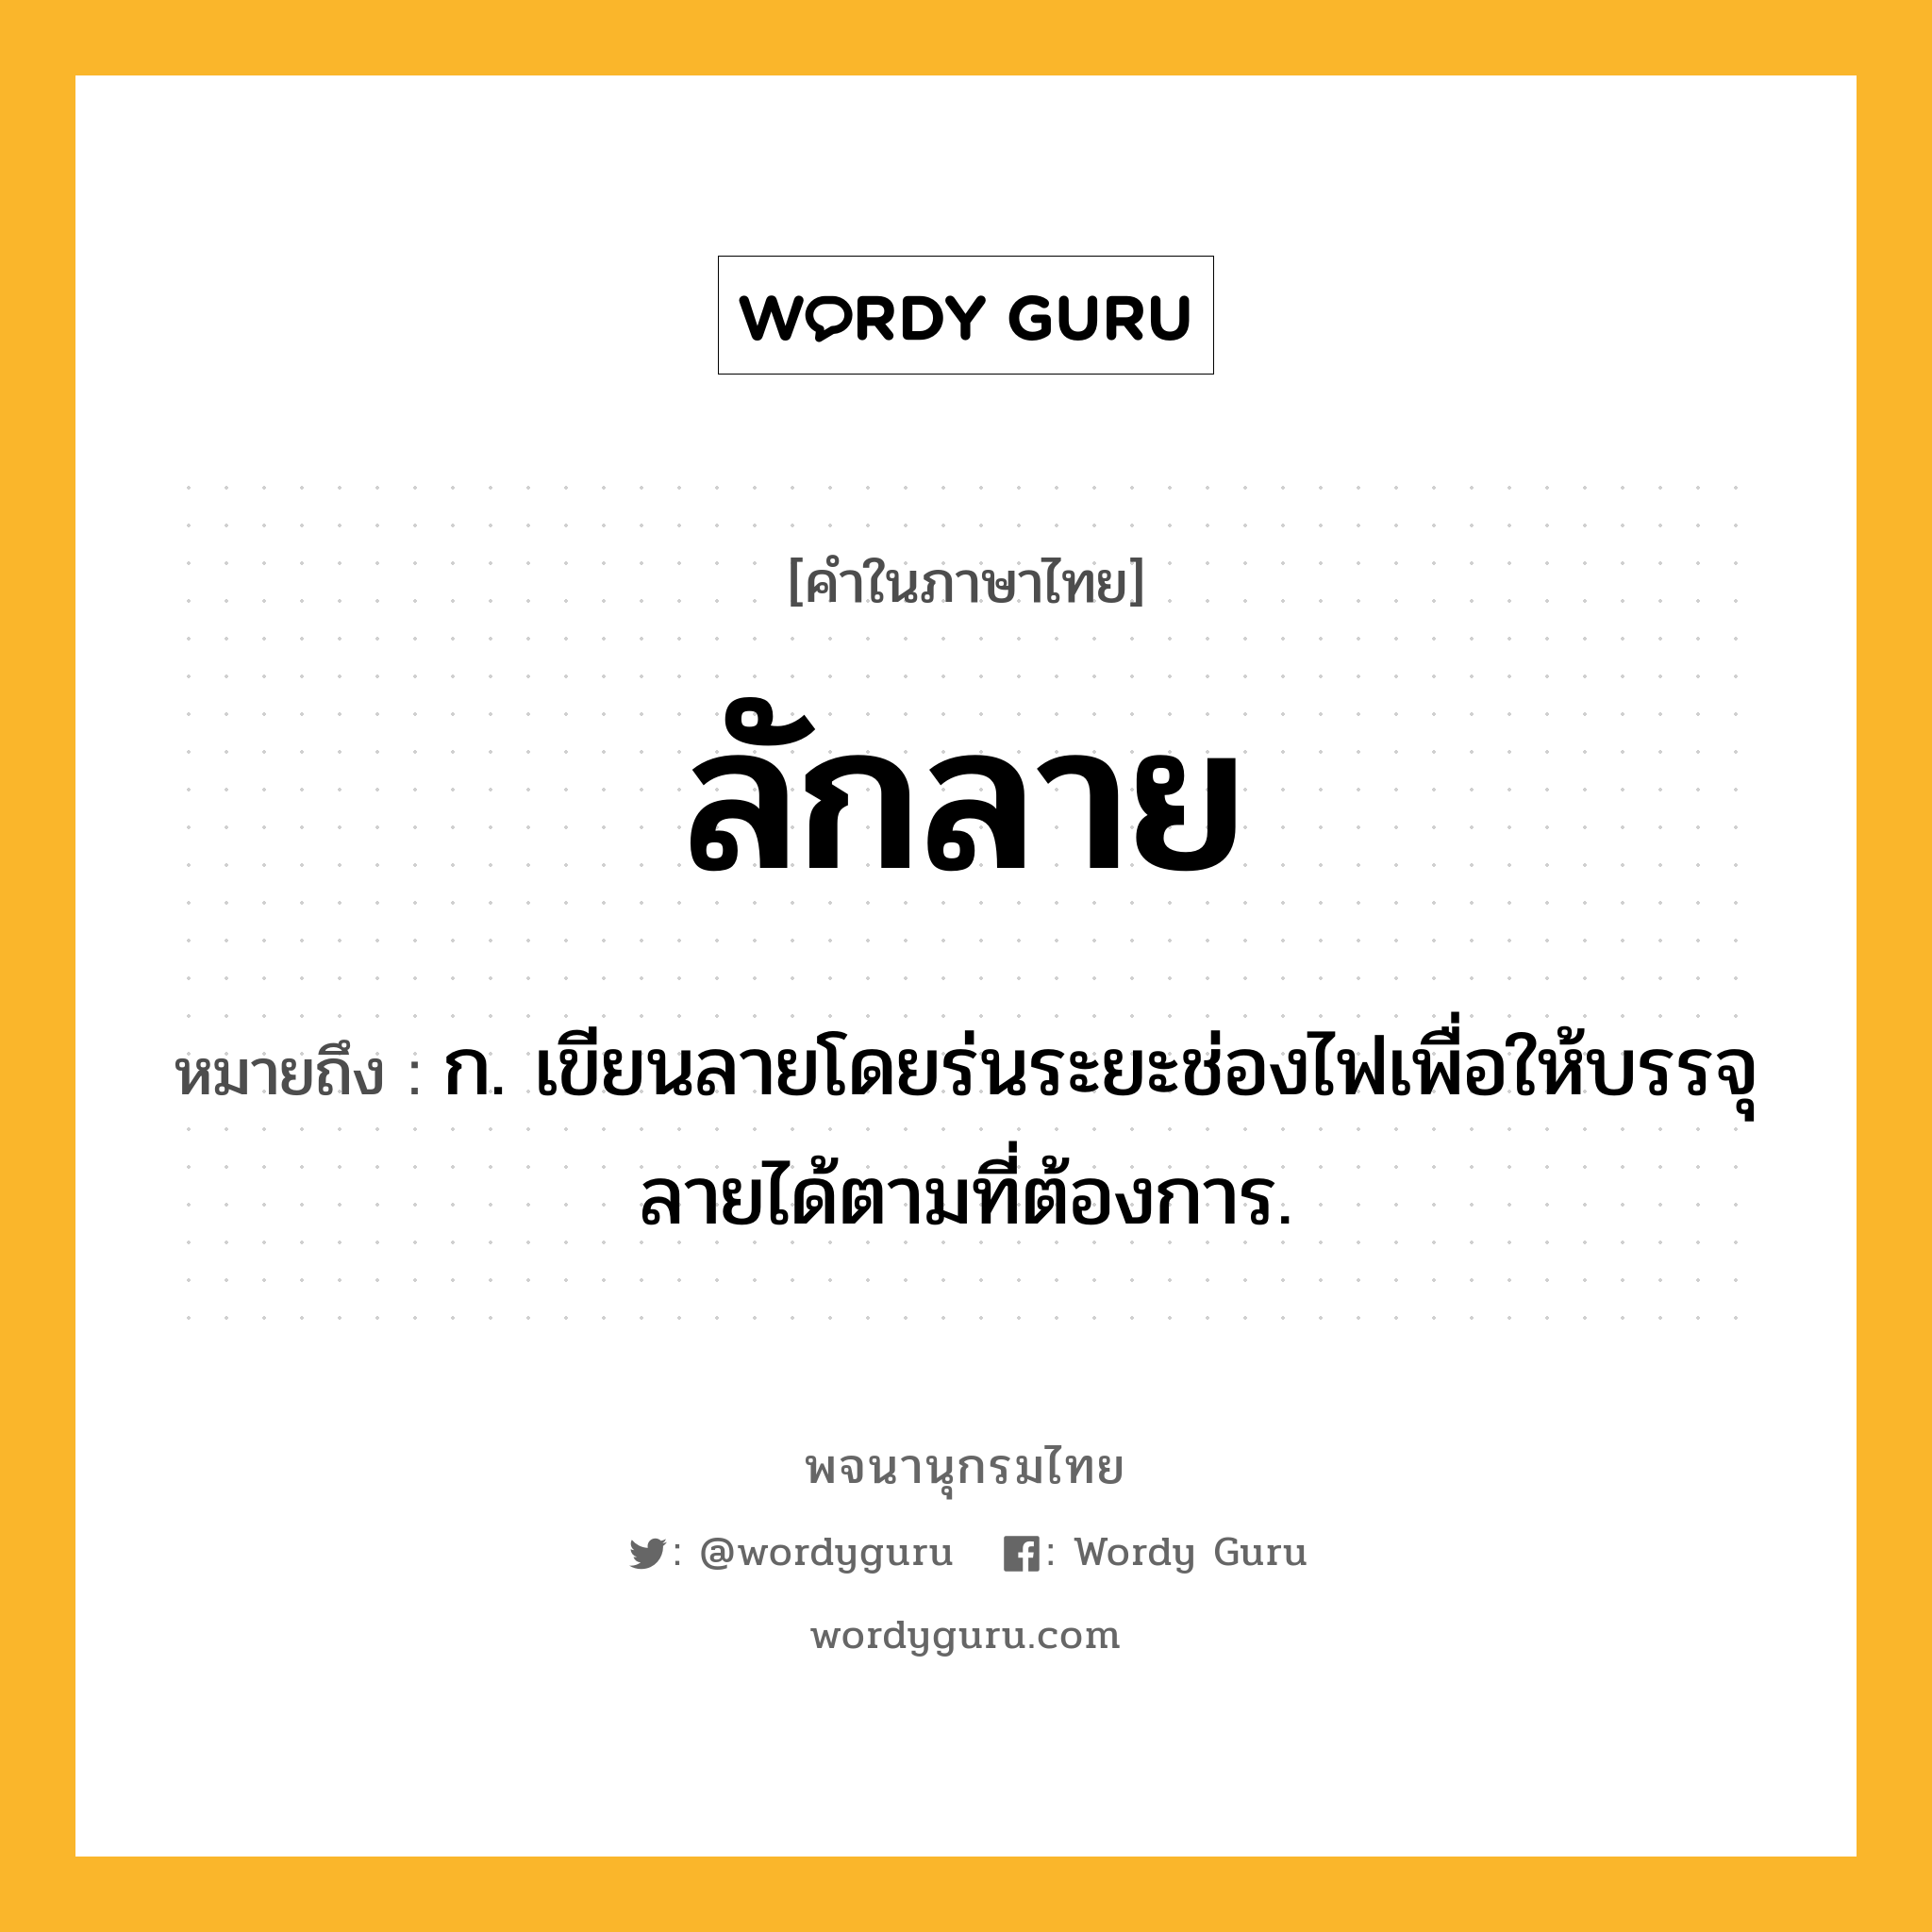 ลักลาย หมายถึงอะไร?, คำในภาษาไทย ลักลาย หมายถึง ก. เขียนลายโดยร่นระยะช่องไฟเพื่อให้บรรจุลายได้ตามที่ต้องการ.